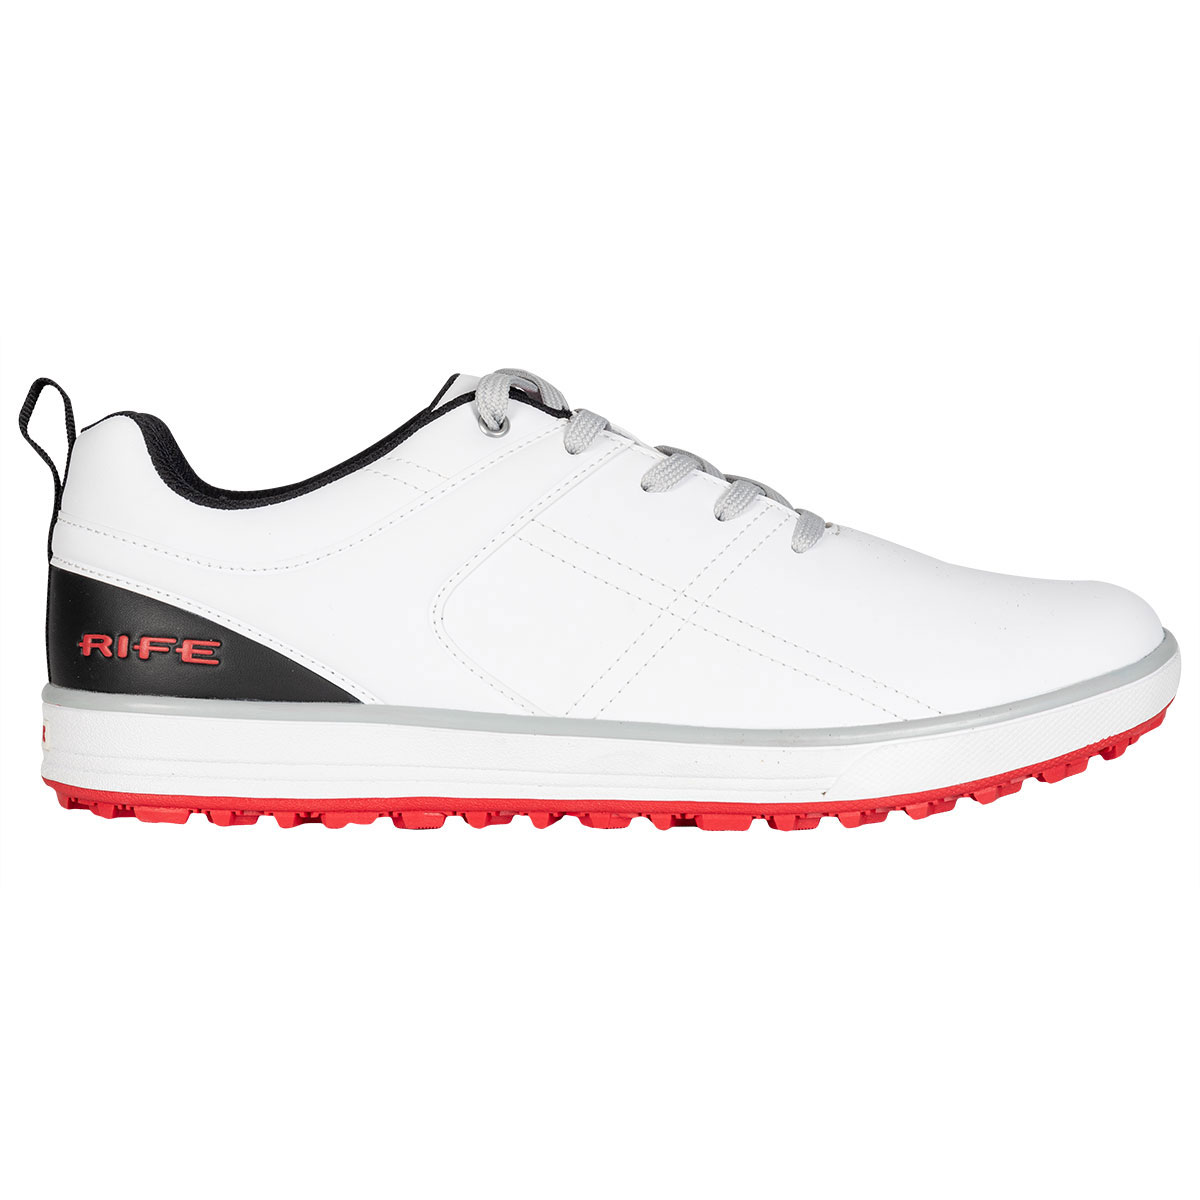 spikeless golf shoes uk